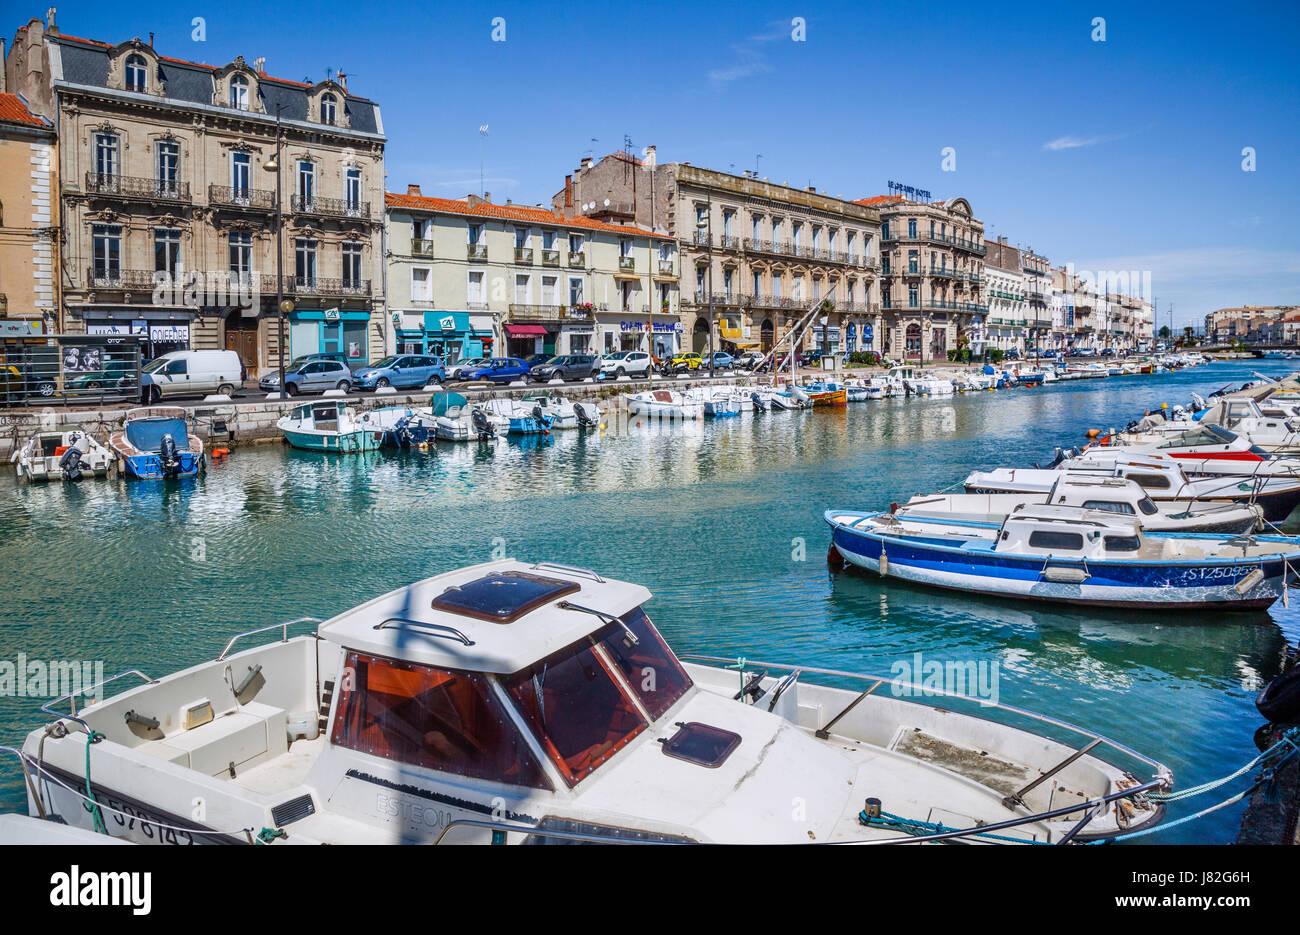 France, Languedoc-Roussillon, Sète, view of Canal de Sète and Quai Maréchal de Lattre de Tassigny Stock Photo